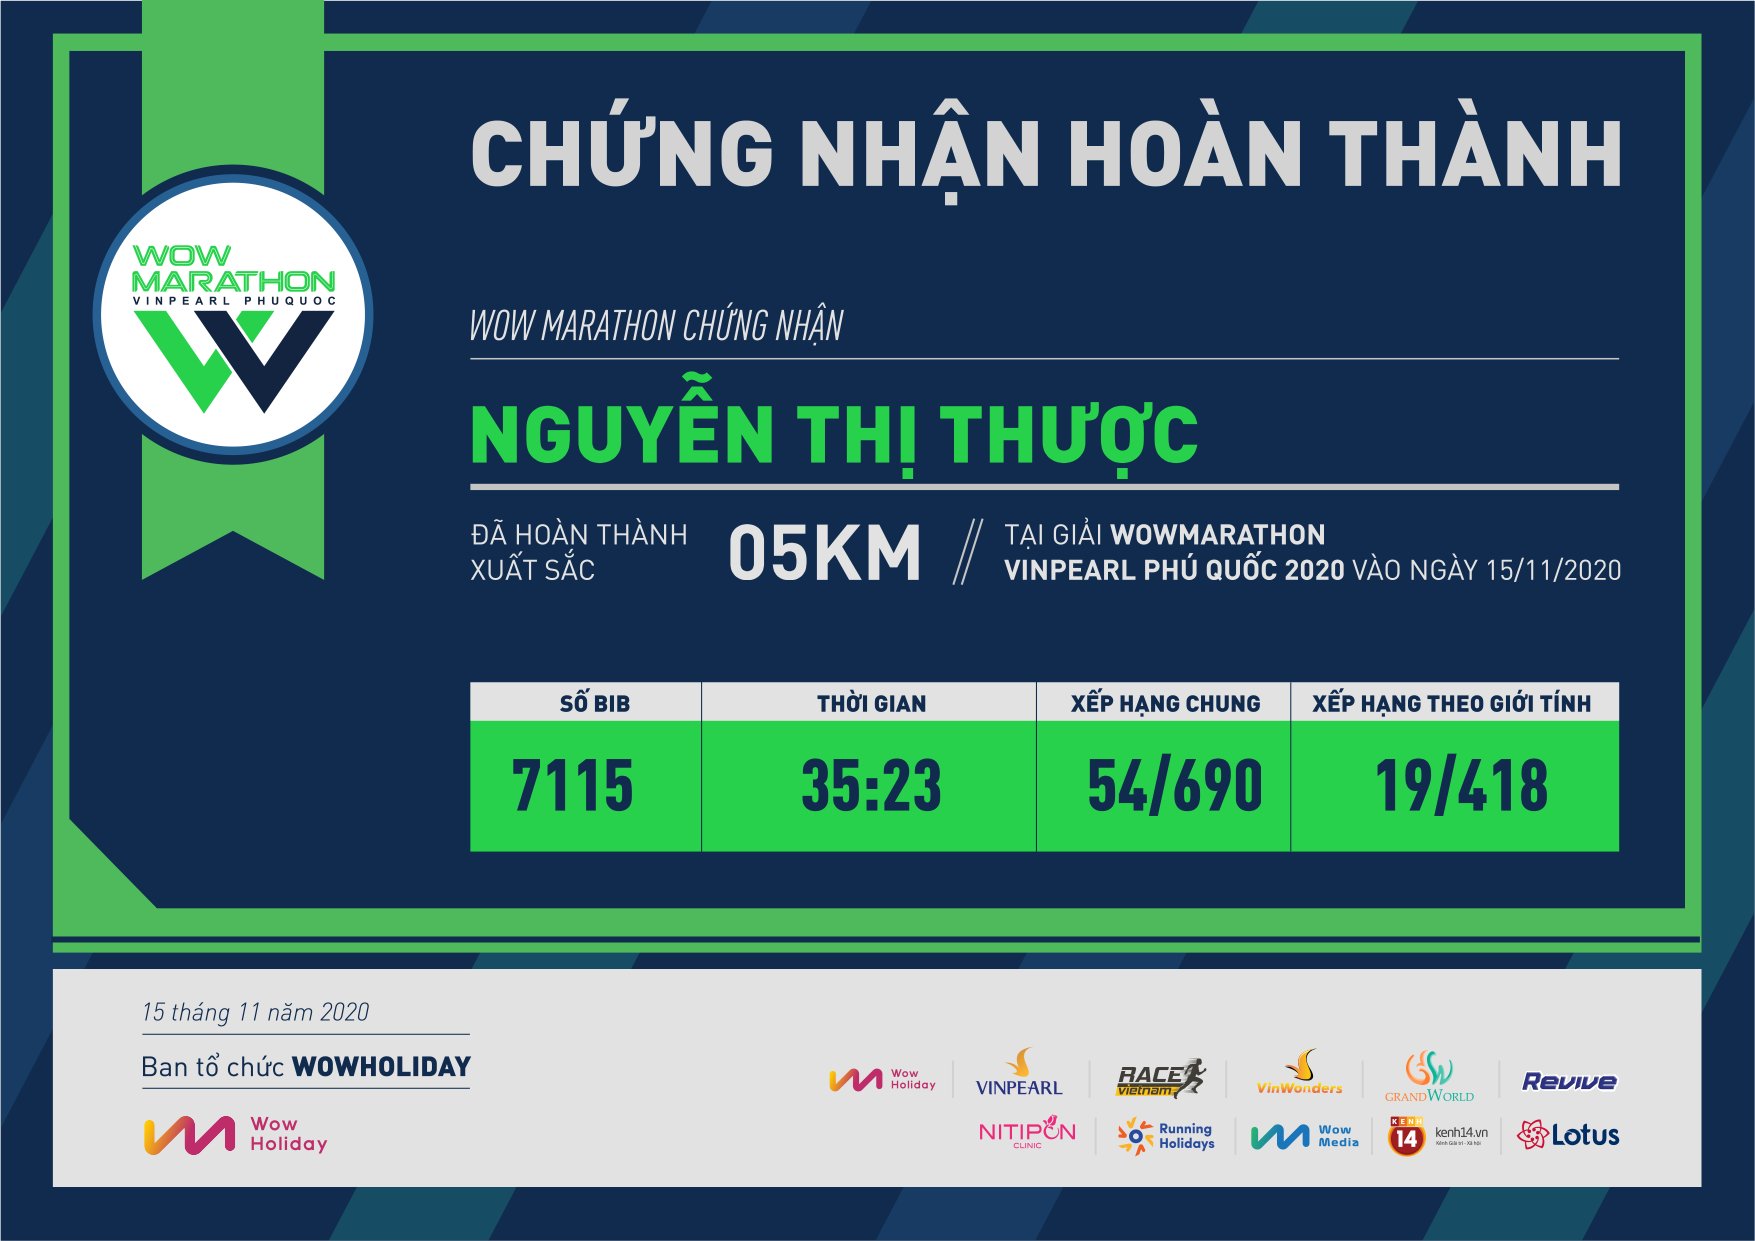 7115 - Nguyễn Thị Thược